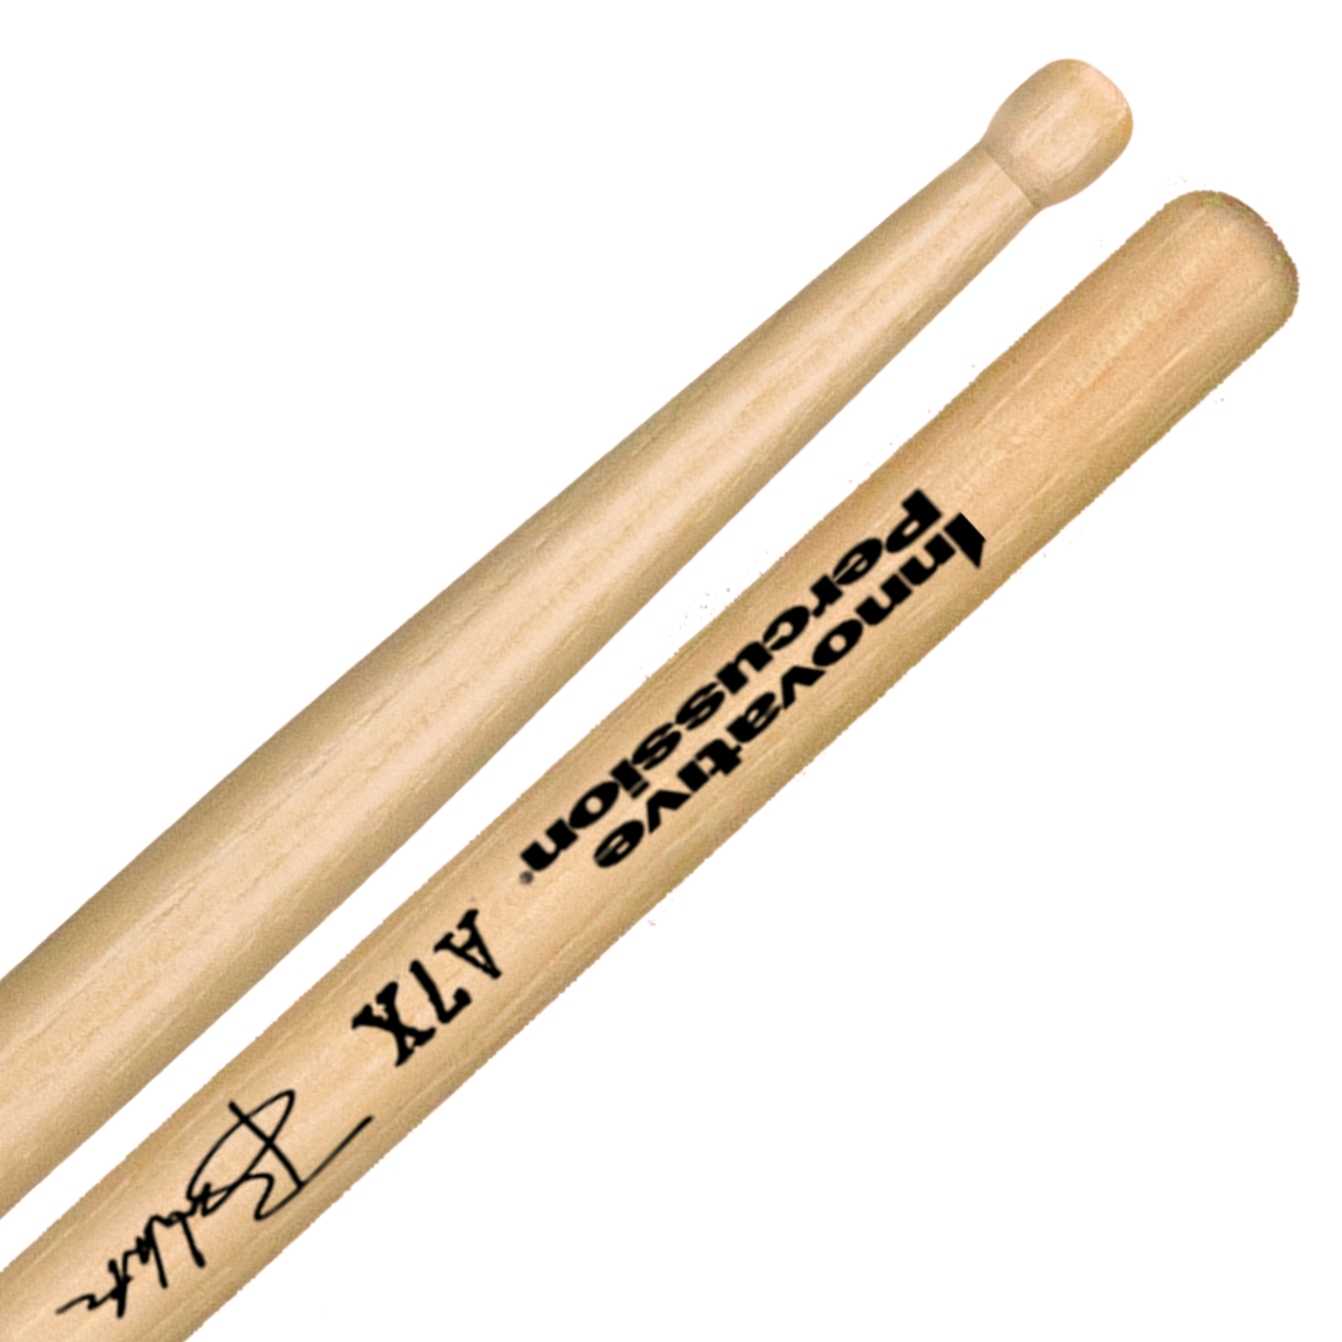 Innovative Percussion A7X Brooks Wackerman Signature Series Drumsticks